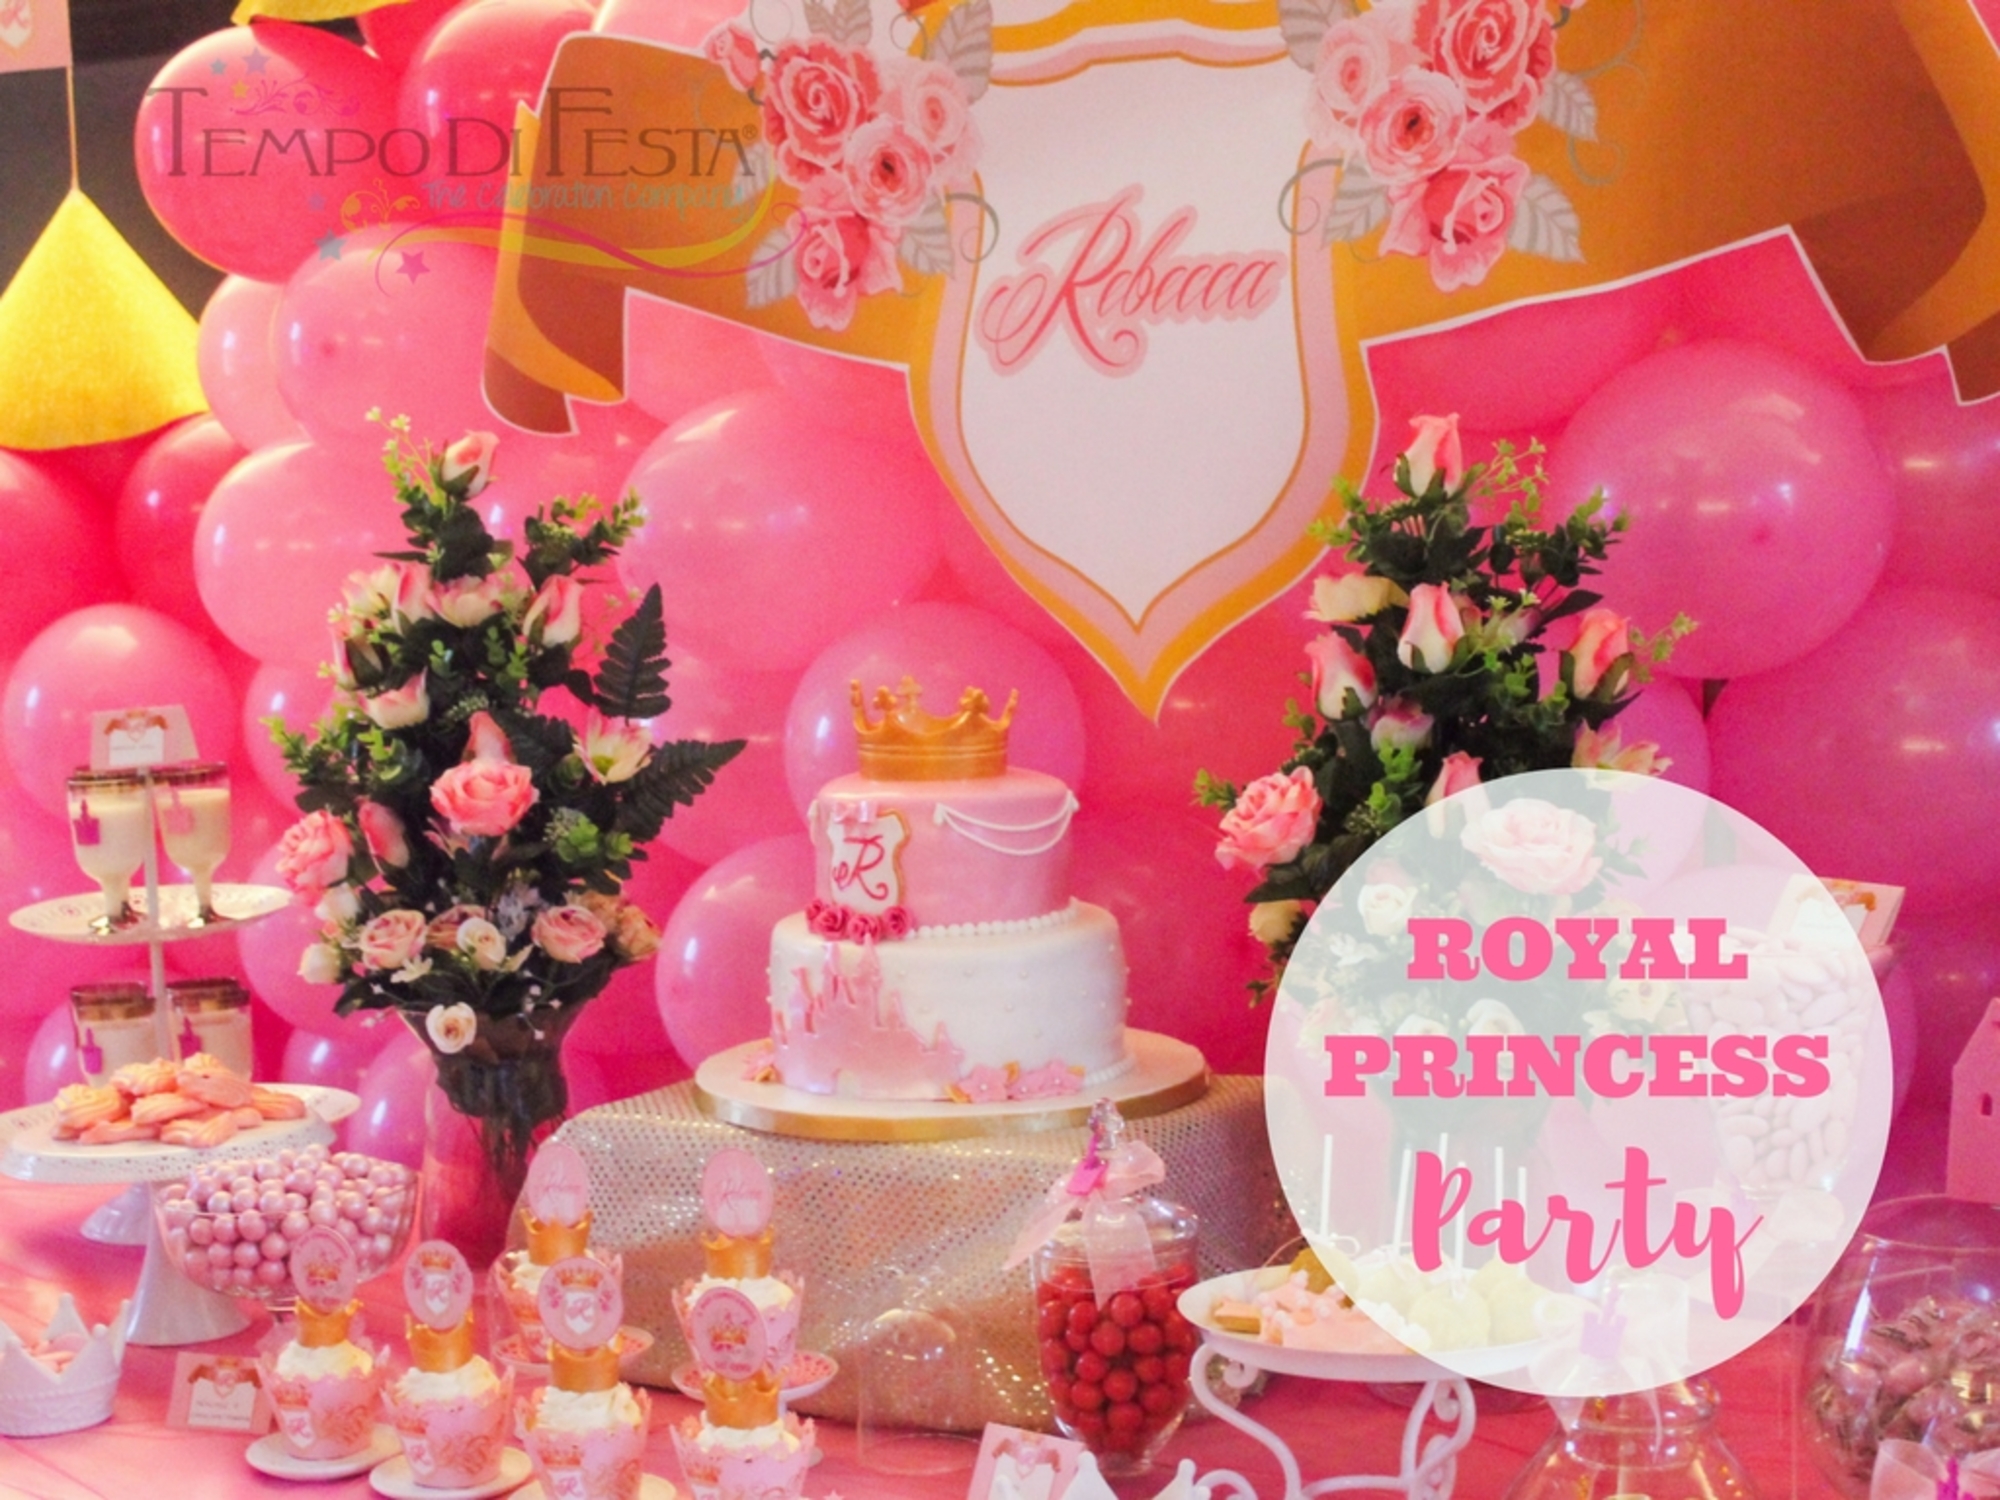 royal princess party